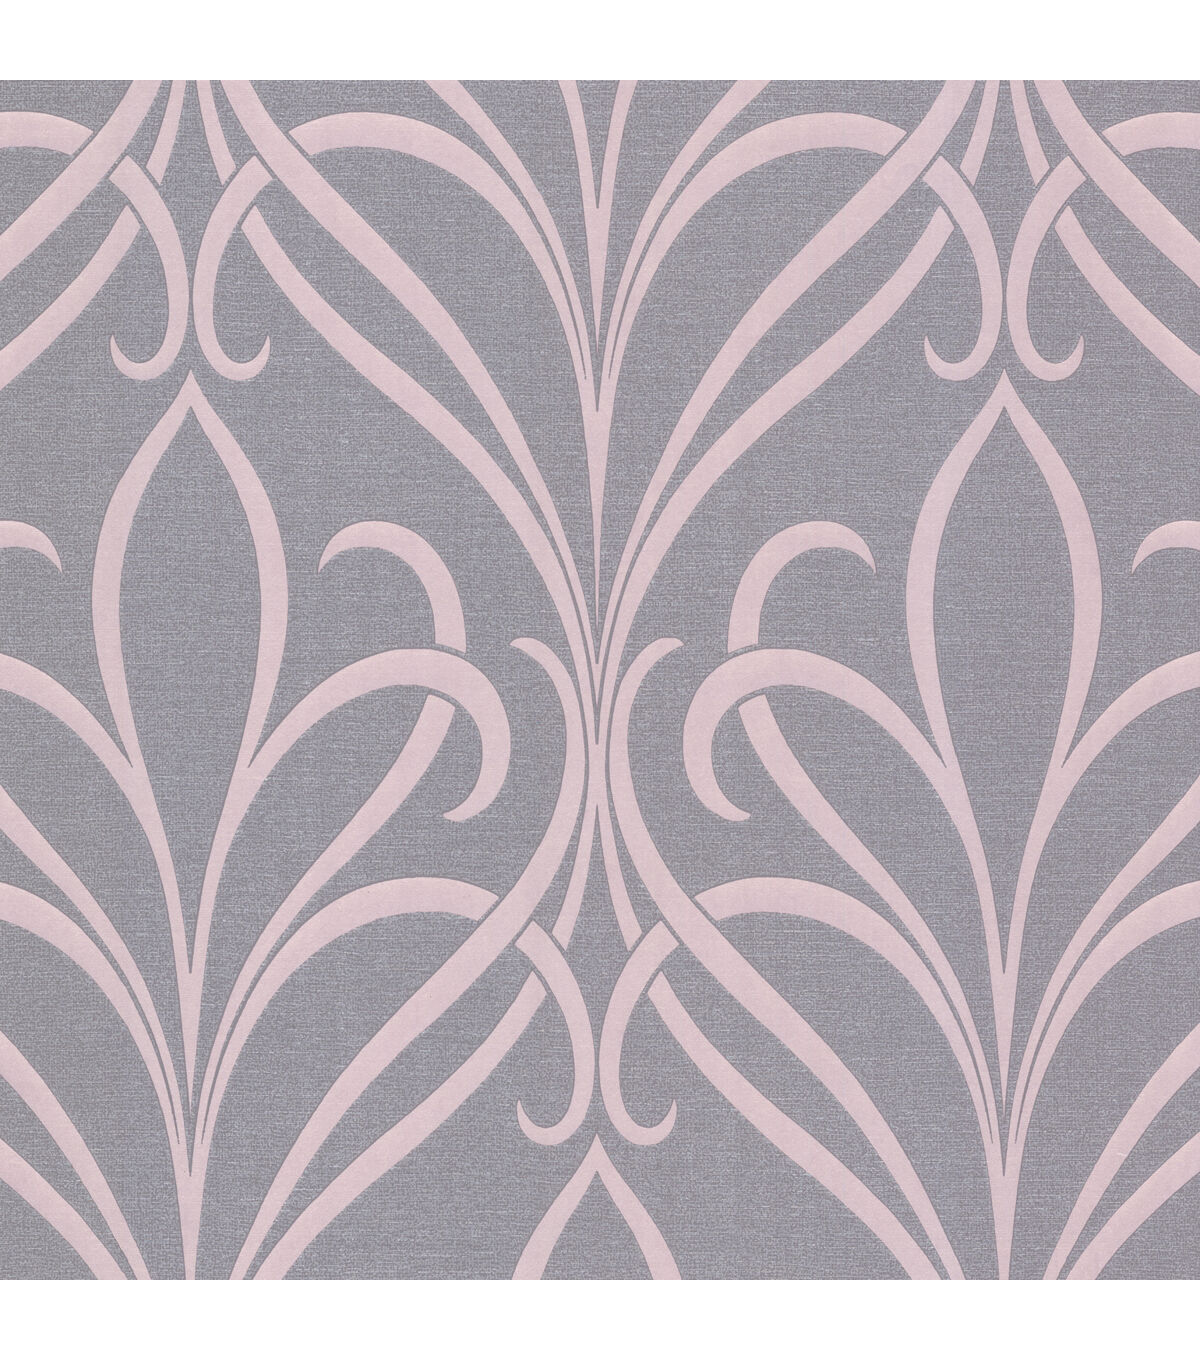 Lalique Pink Art Deco Motif Wallpaper - On Sale - Bed Bath & Beyond -  36855936